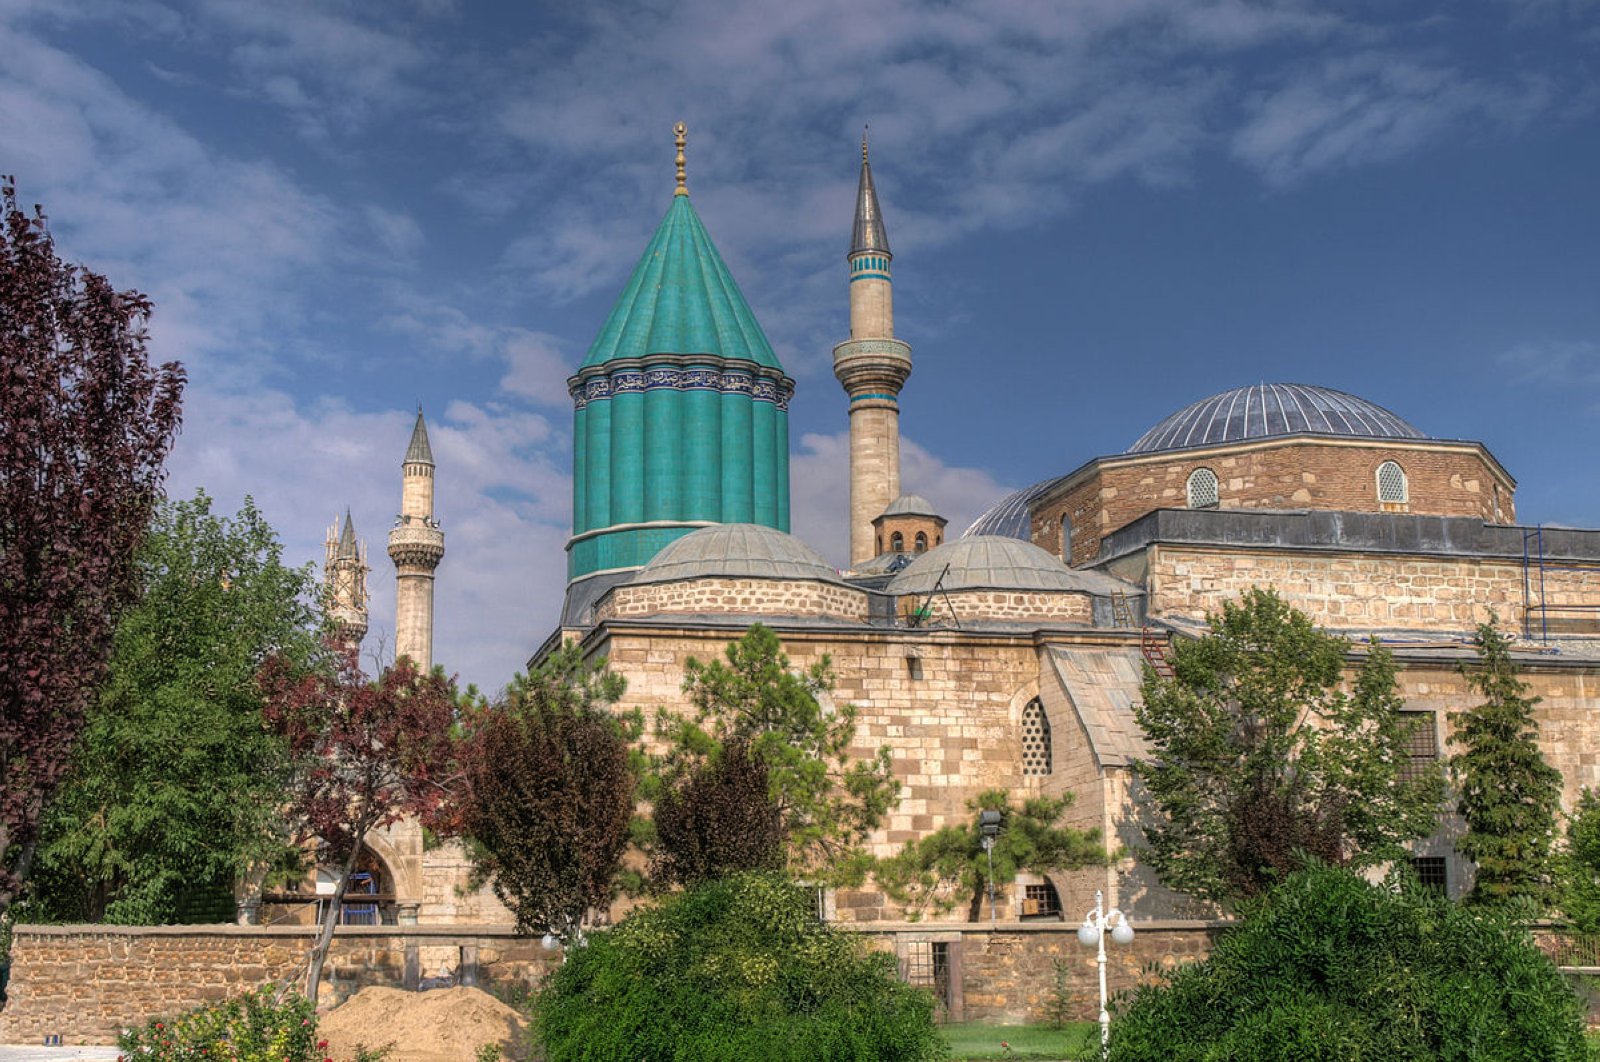 Rumi: Islamic Scholar, Poet and Mystic